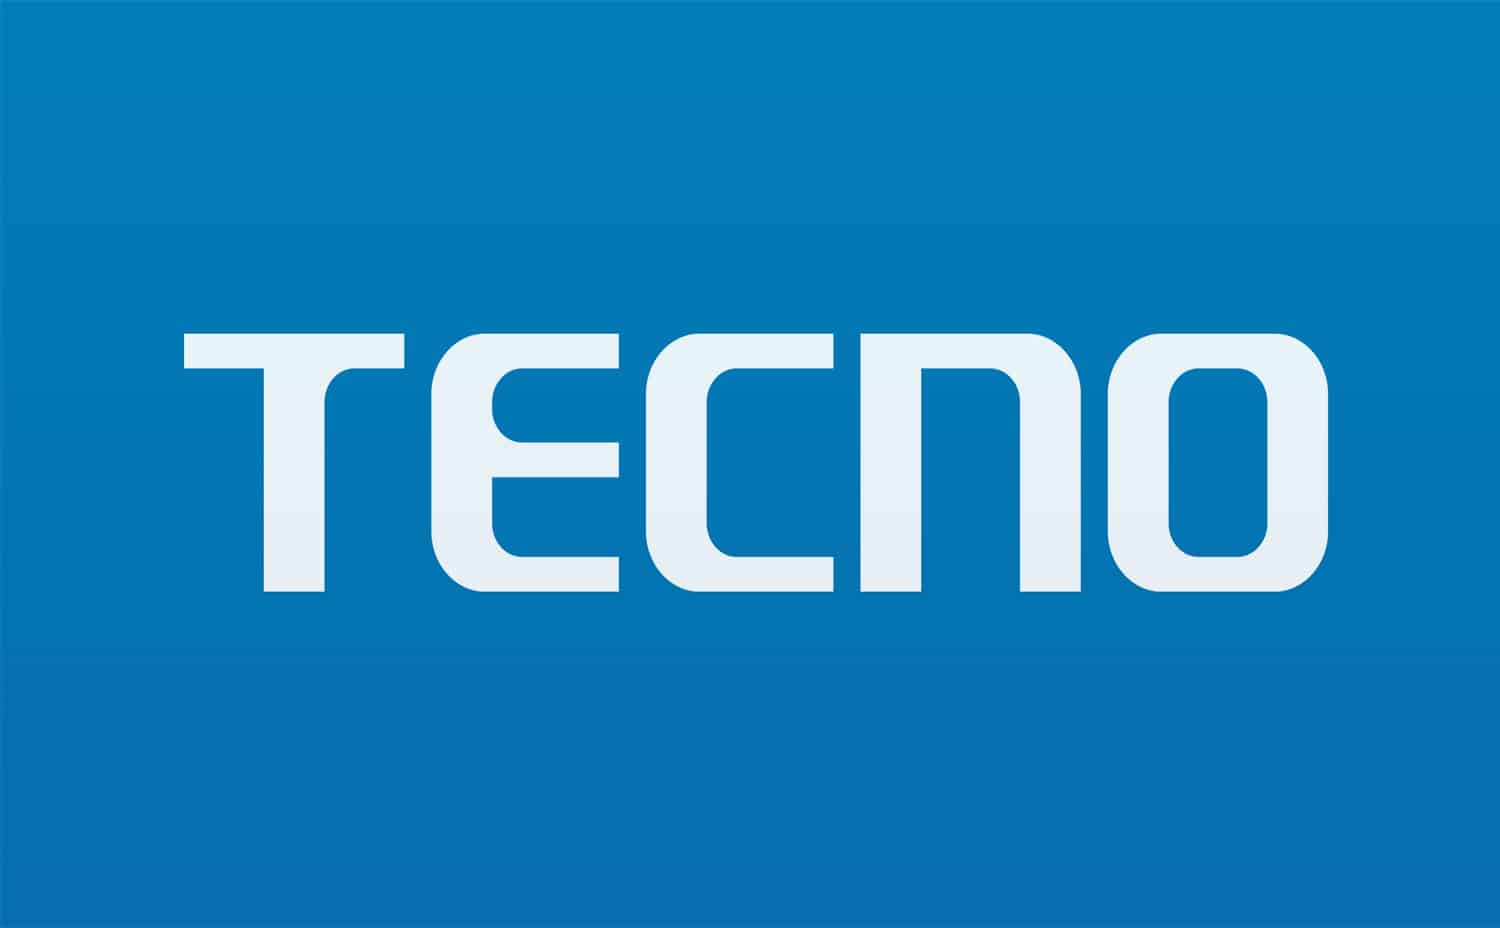 تقدم Tecno أول عدسة ماكرو تلسكوبيه في العالم للهواتف الذكية